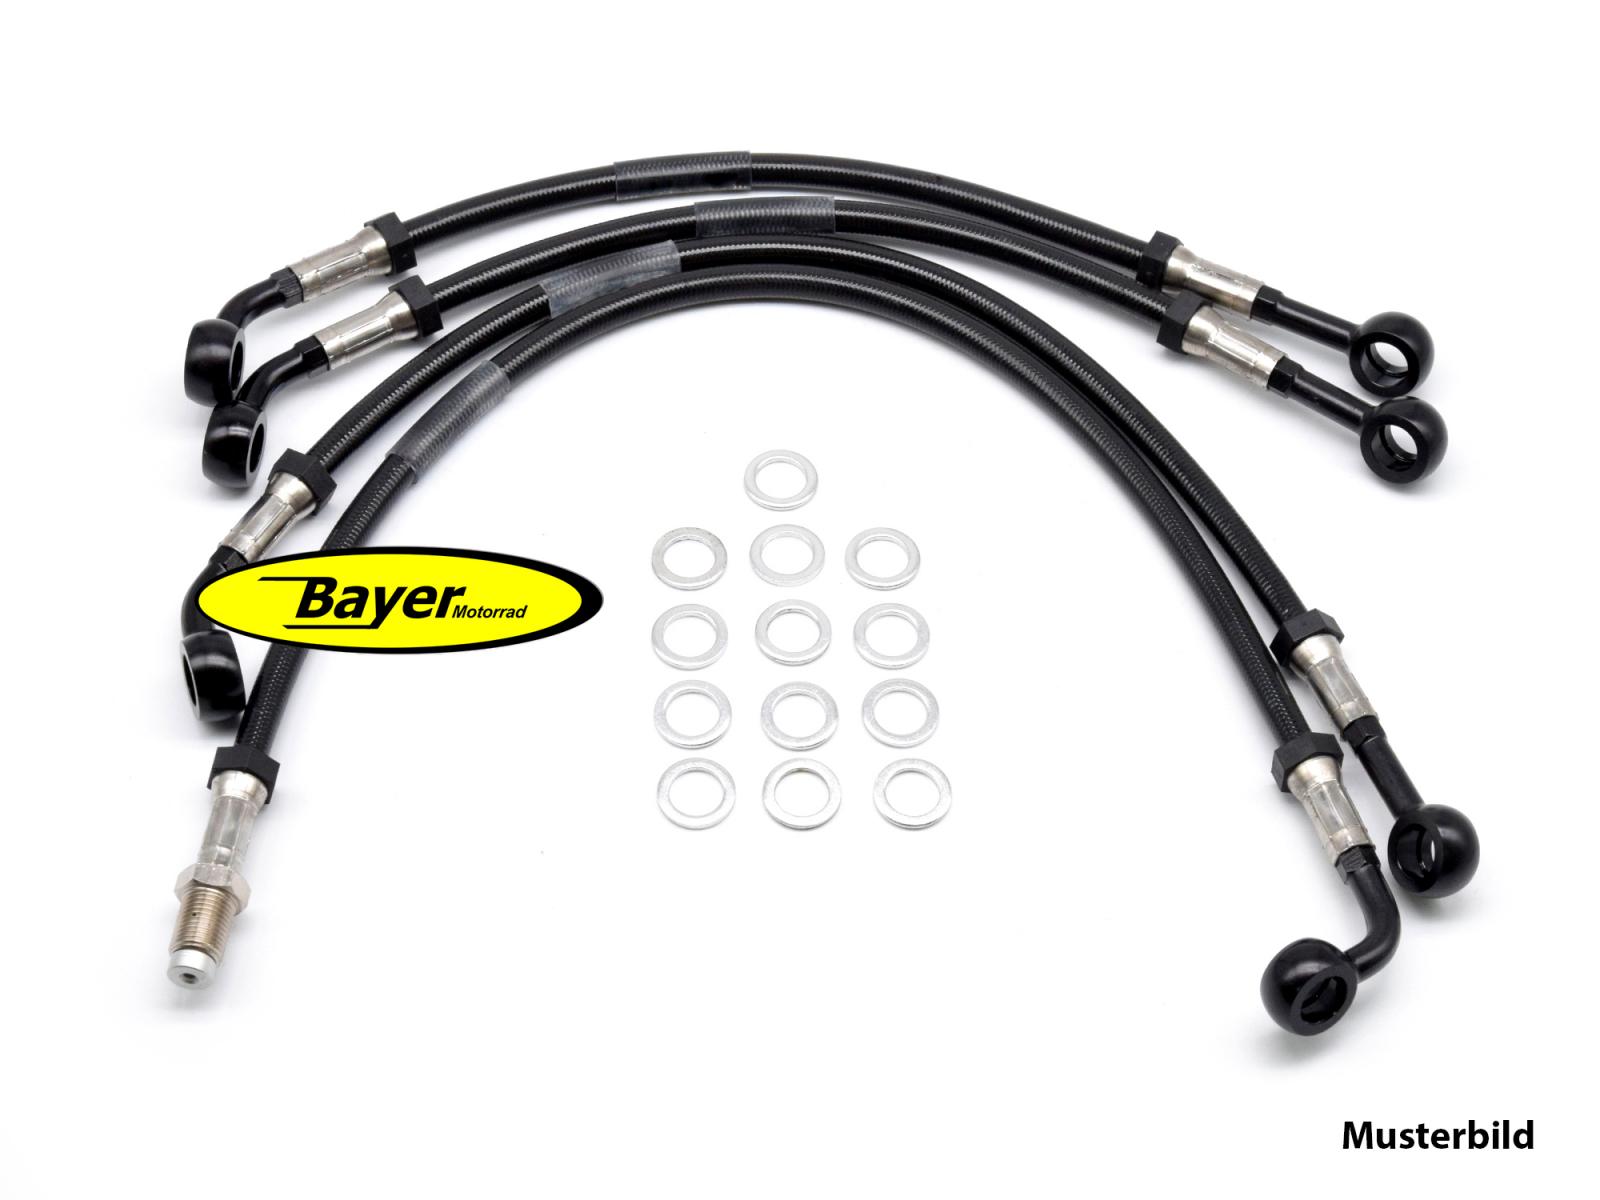 Bayer-Motor: Onlineshop für BMW-Ersatzteile. Gebrauchtteile für